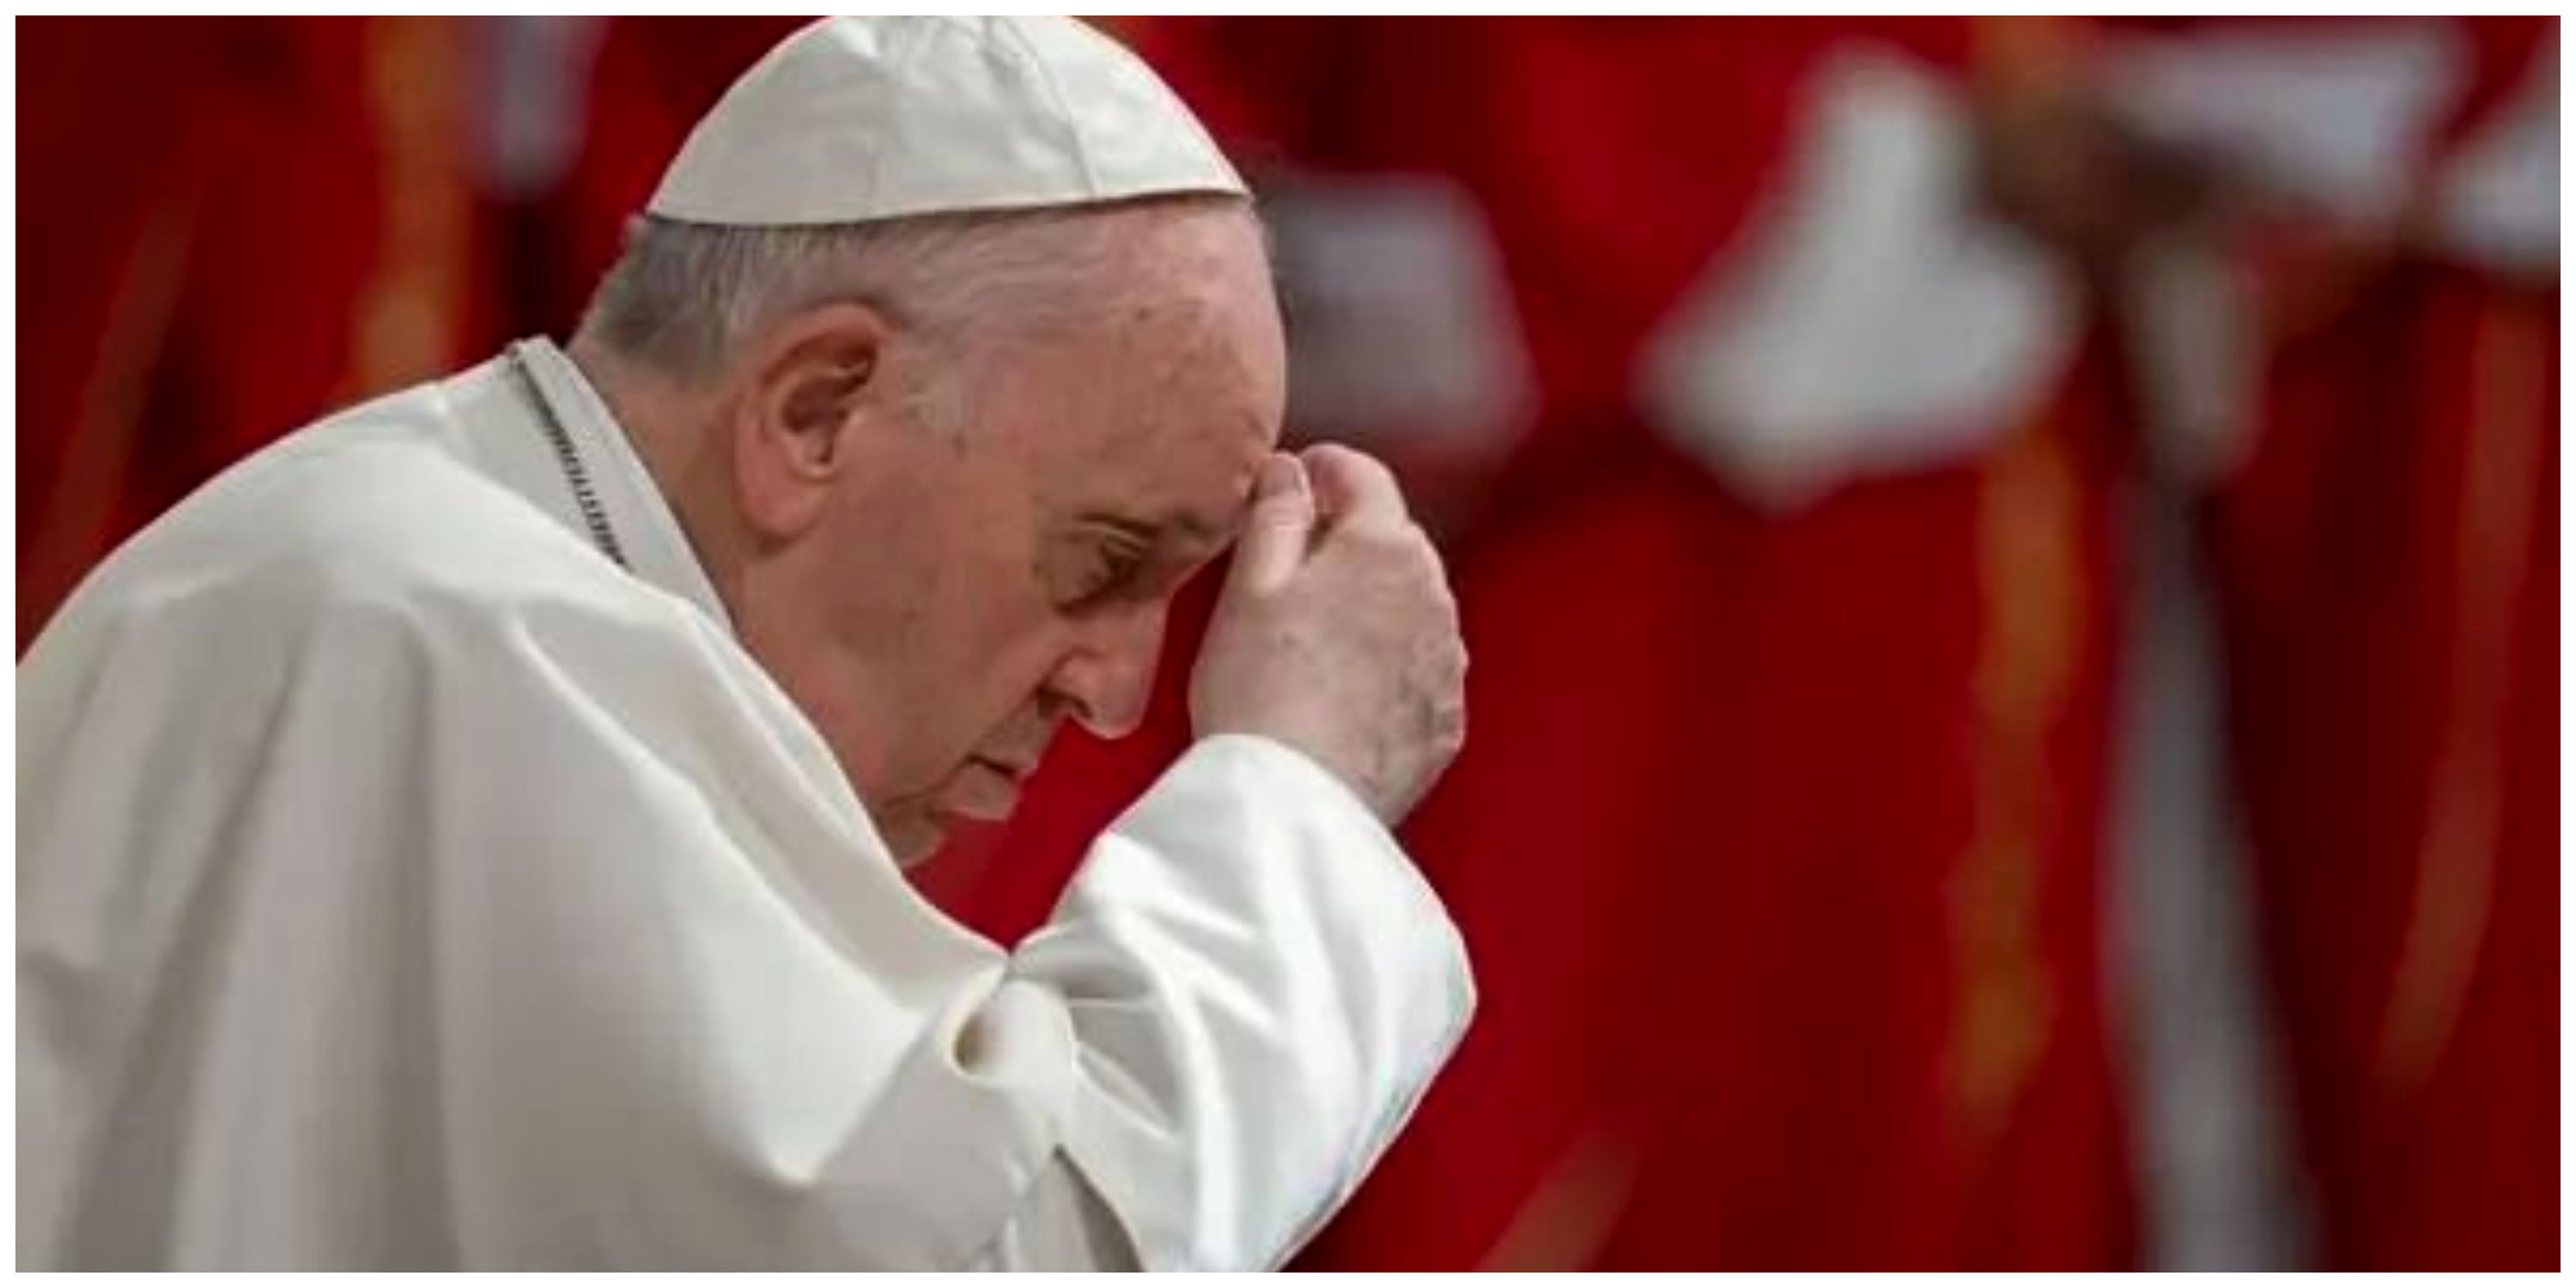 پاپ فرانسیس: منطق جنگ پوچ است / جایی در دنیا برای صلح باقی نمانده است